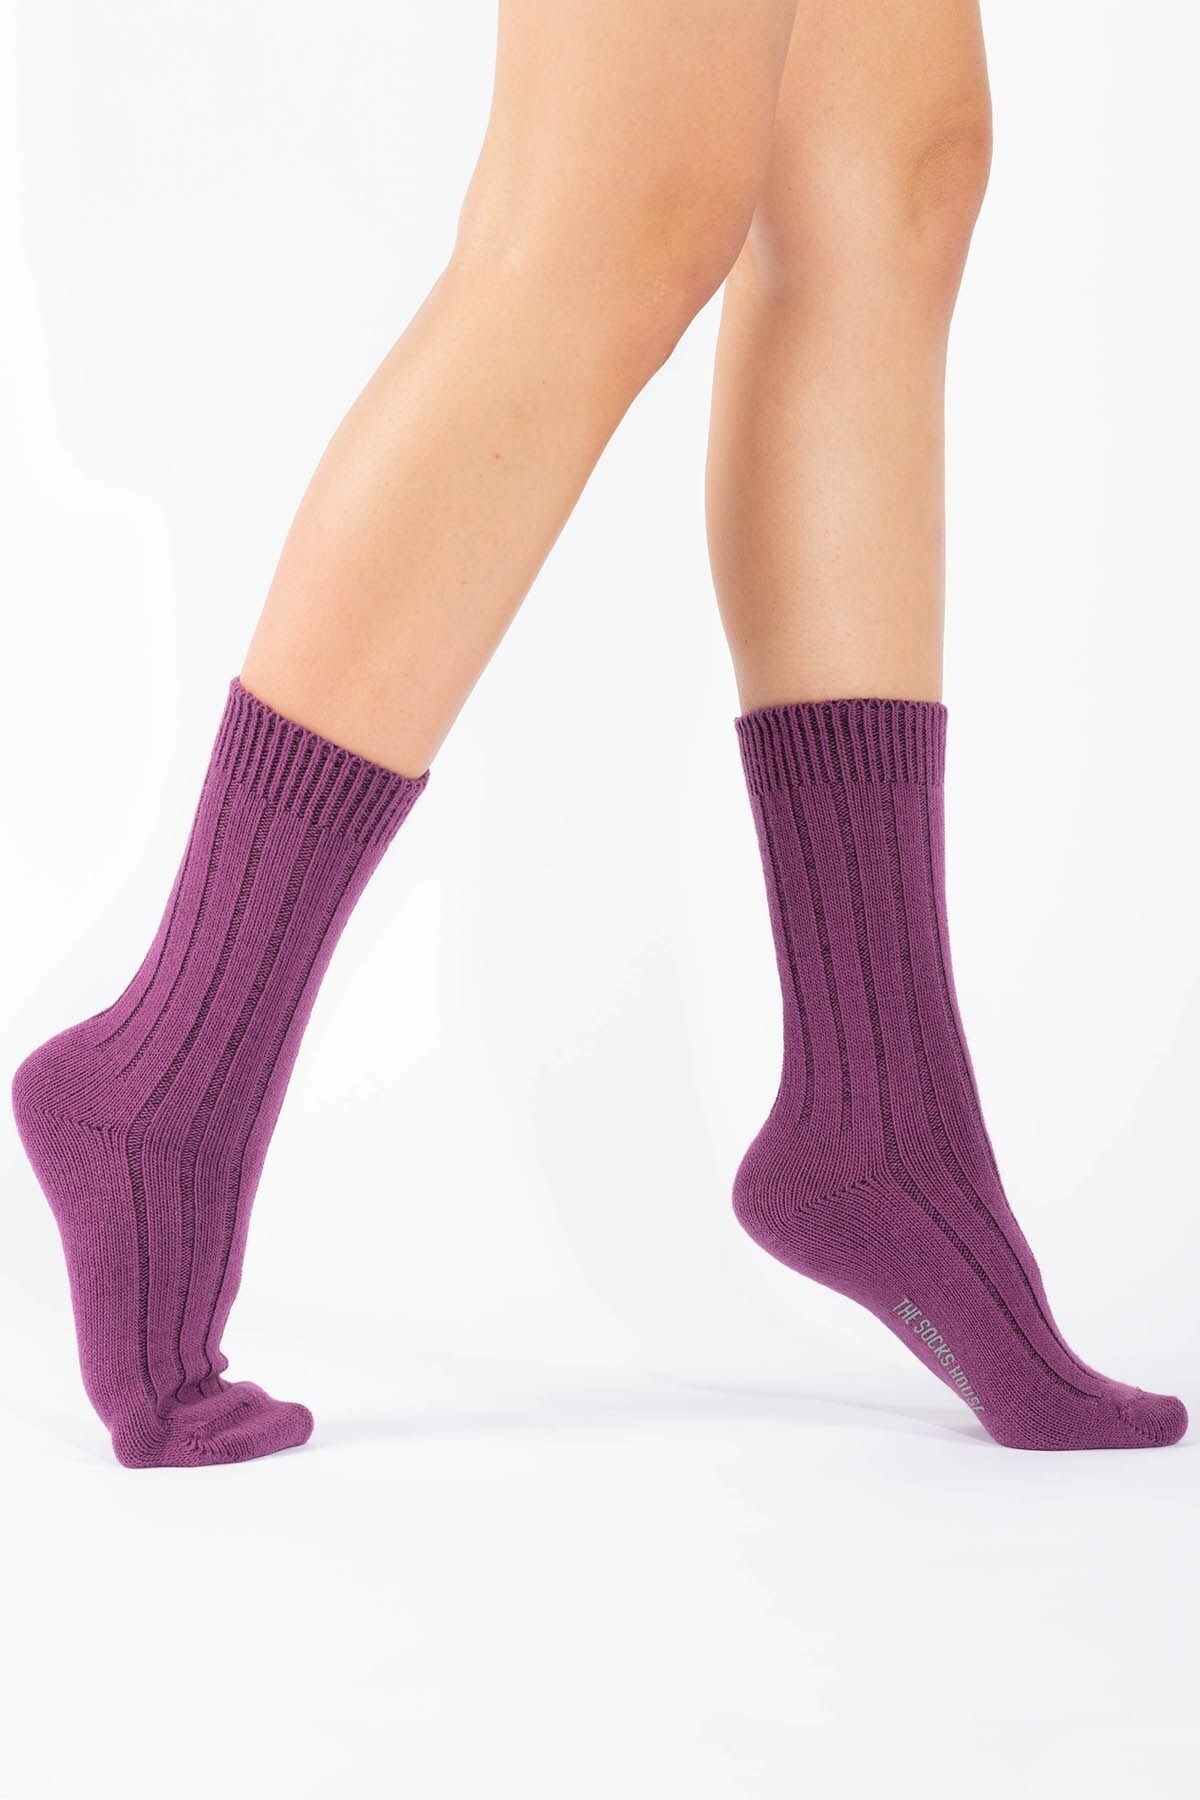 The Socks House Kadın Yünlü Derbili Mor Bot Çorabı